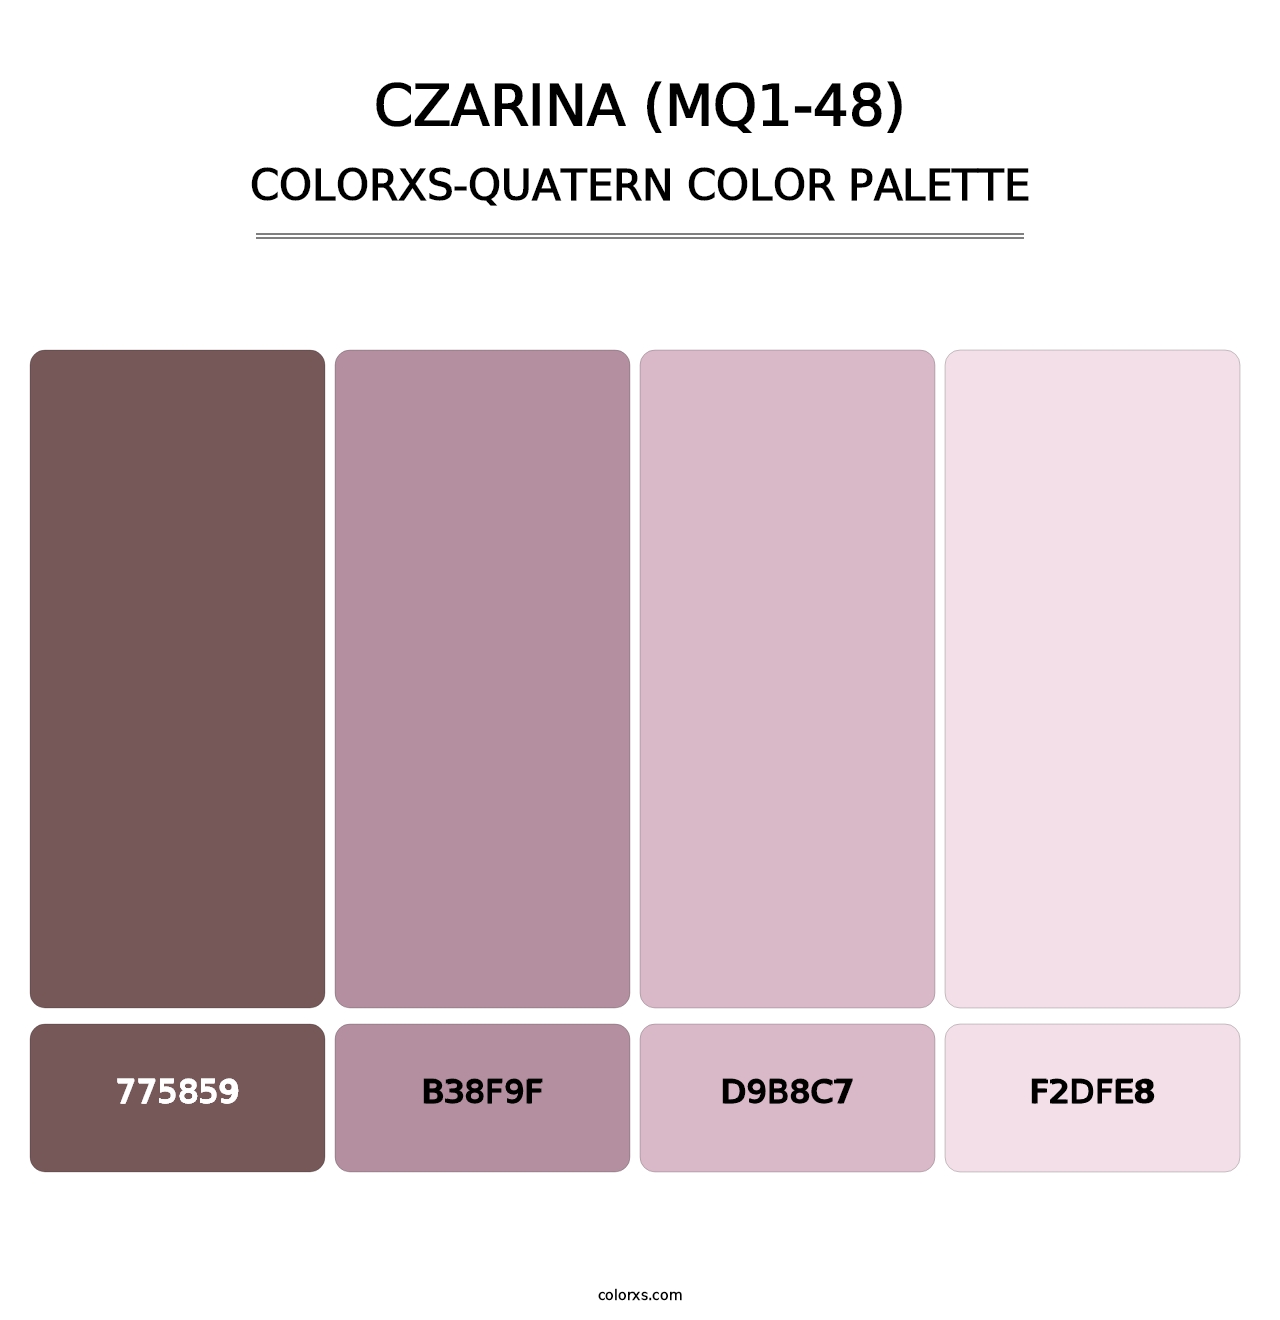 Czarina (MQ1-48) - Colorxs Quatern Palette